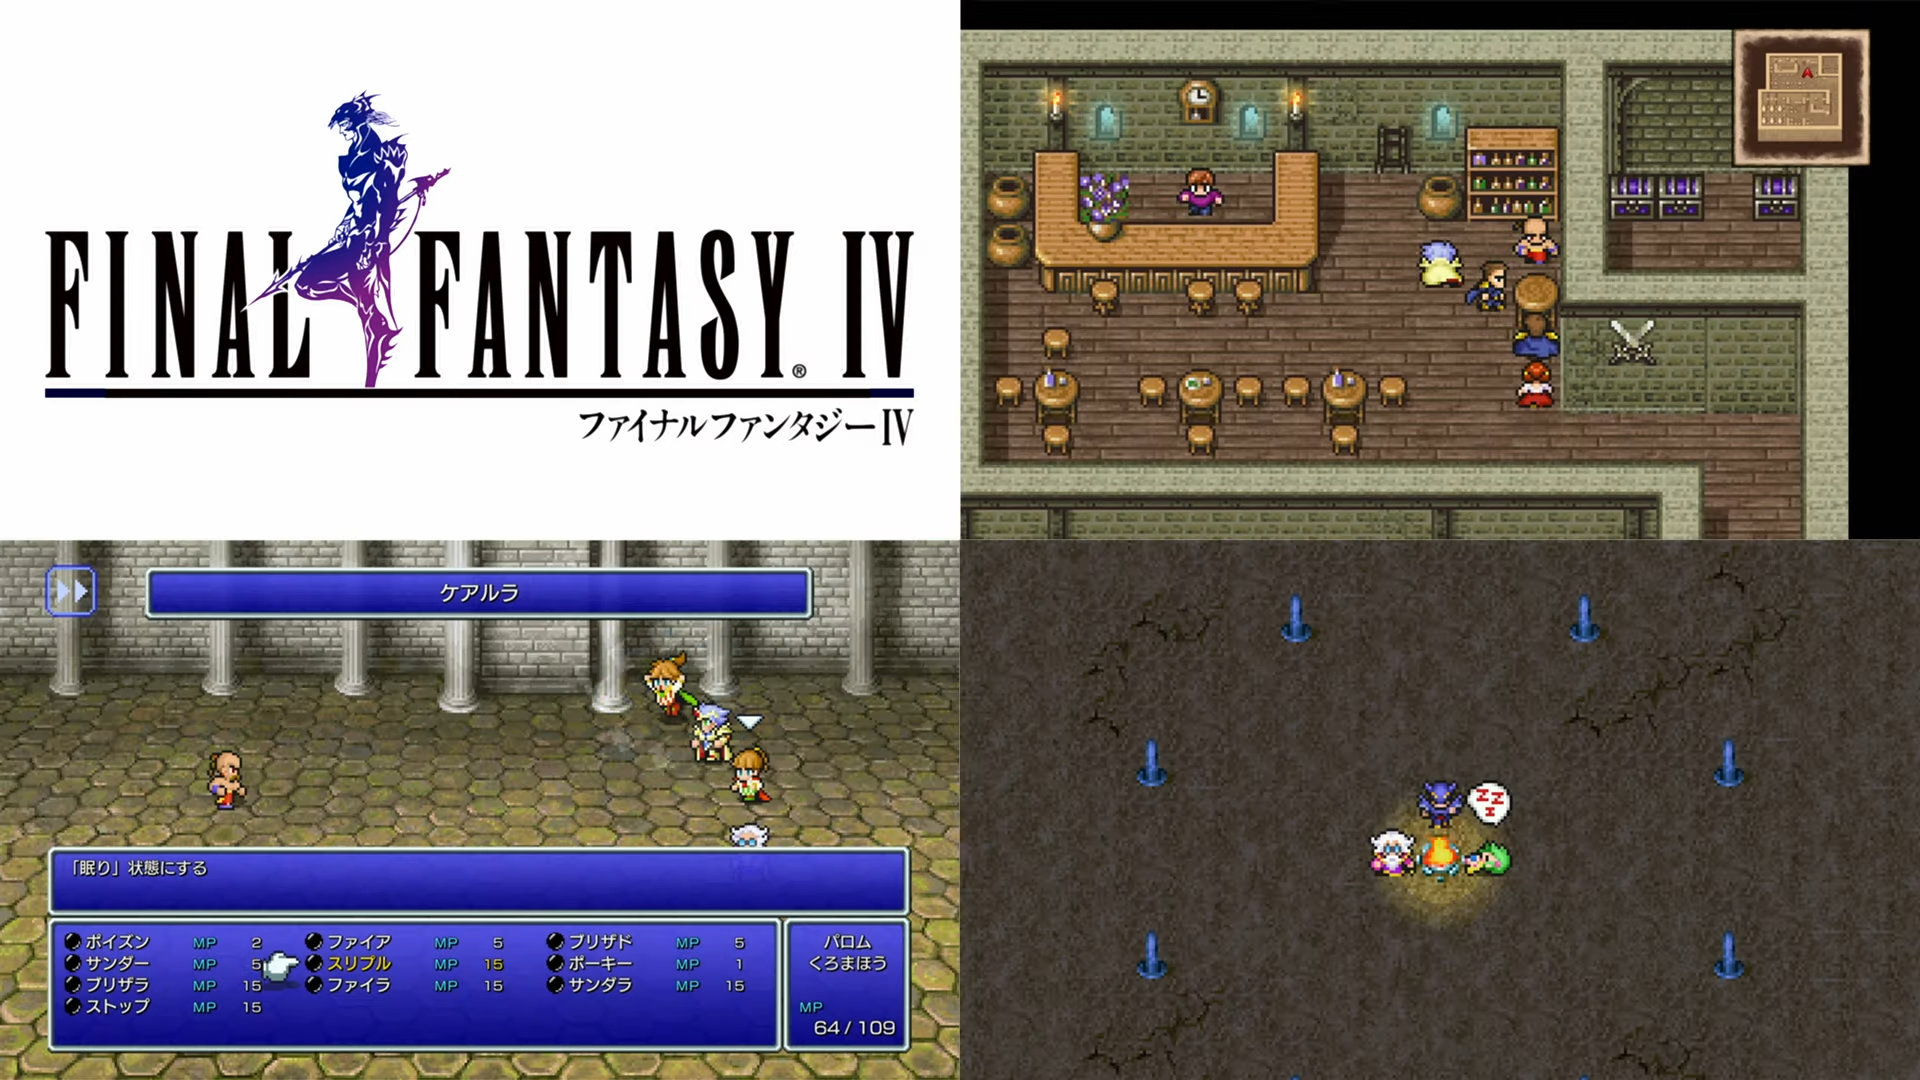 Final fantasy 4 pixel remaster trophy guide